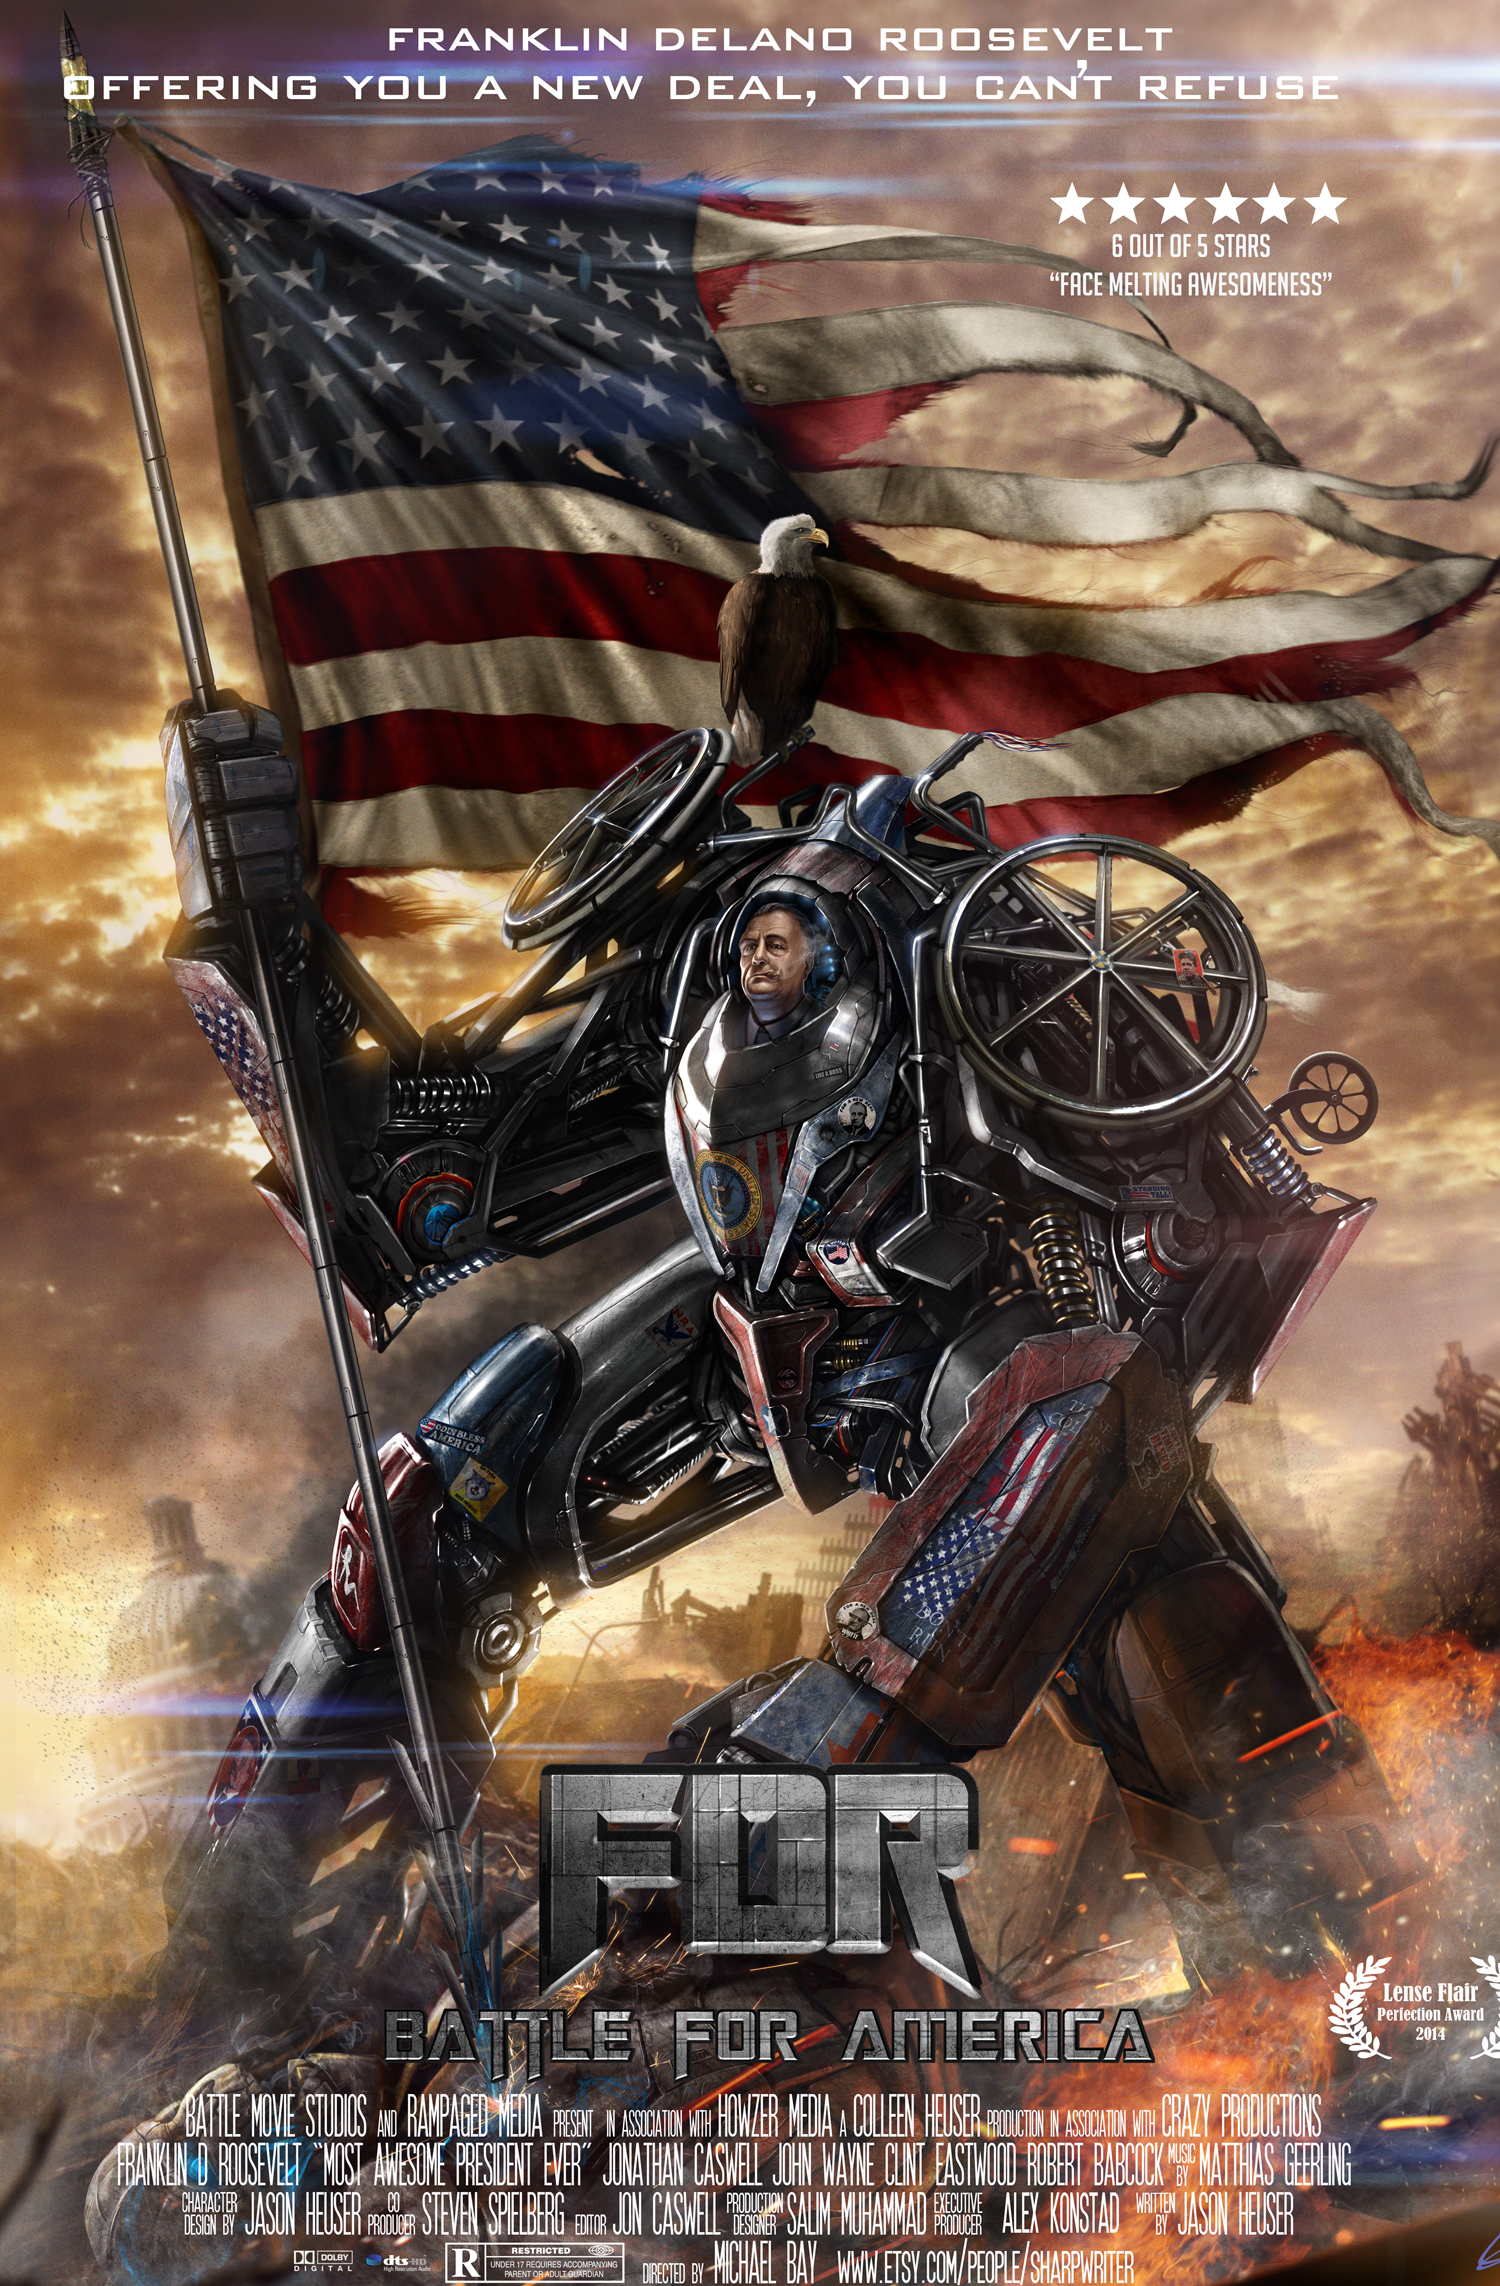 fdr_battle_for_america_poster_by_sharpwriter-d46kt1m.jpg